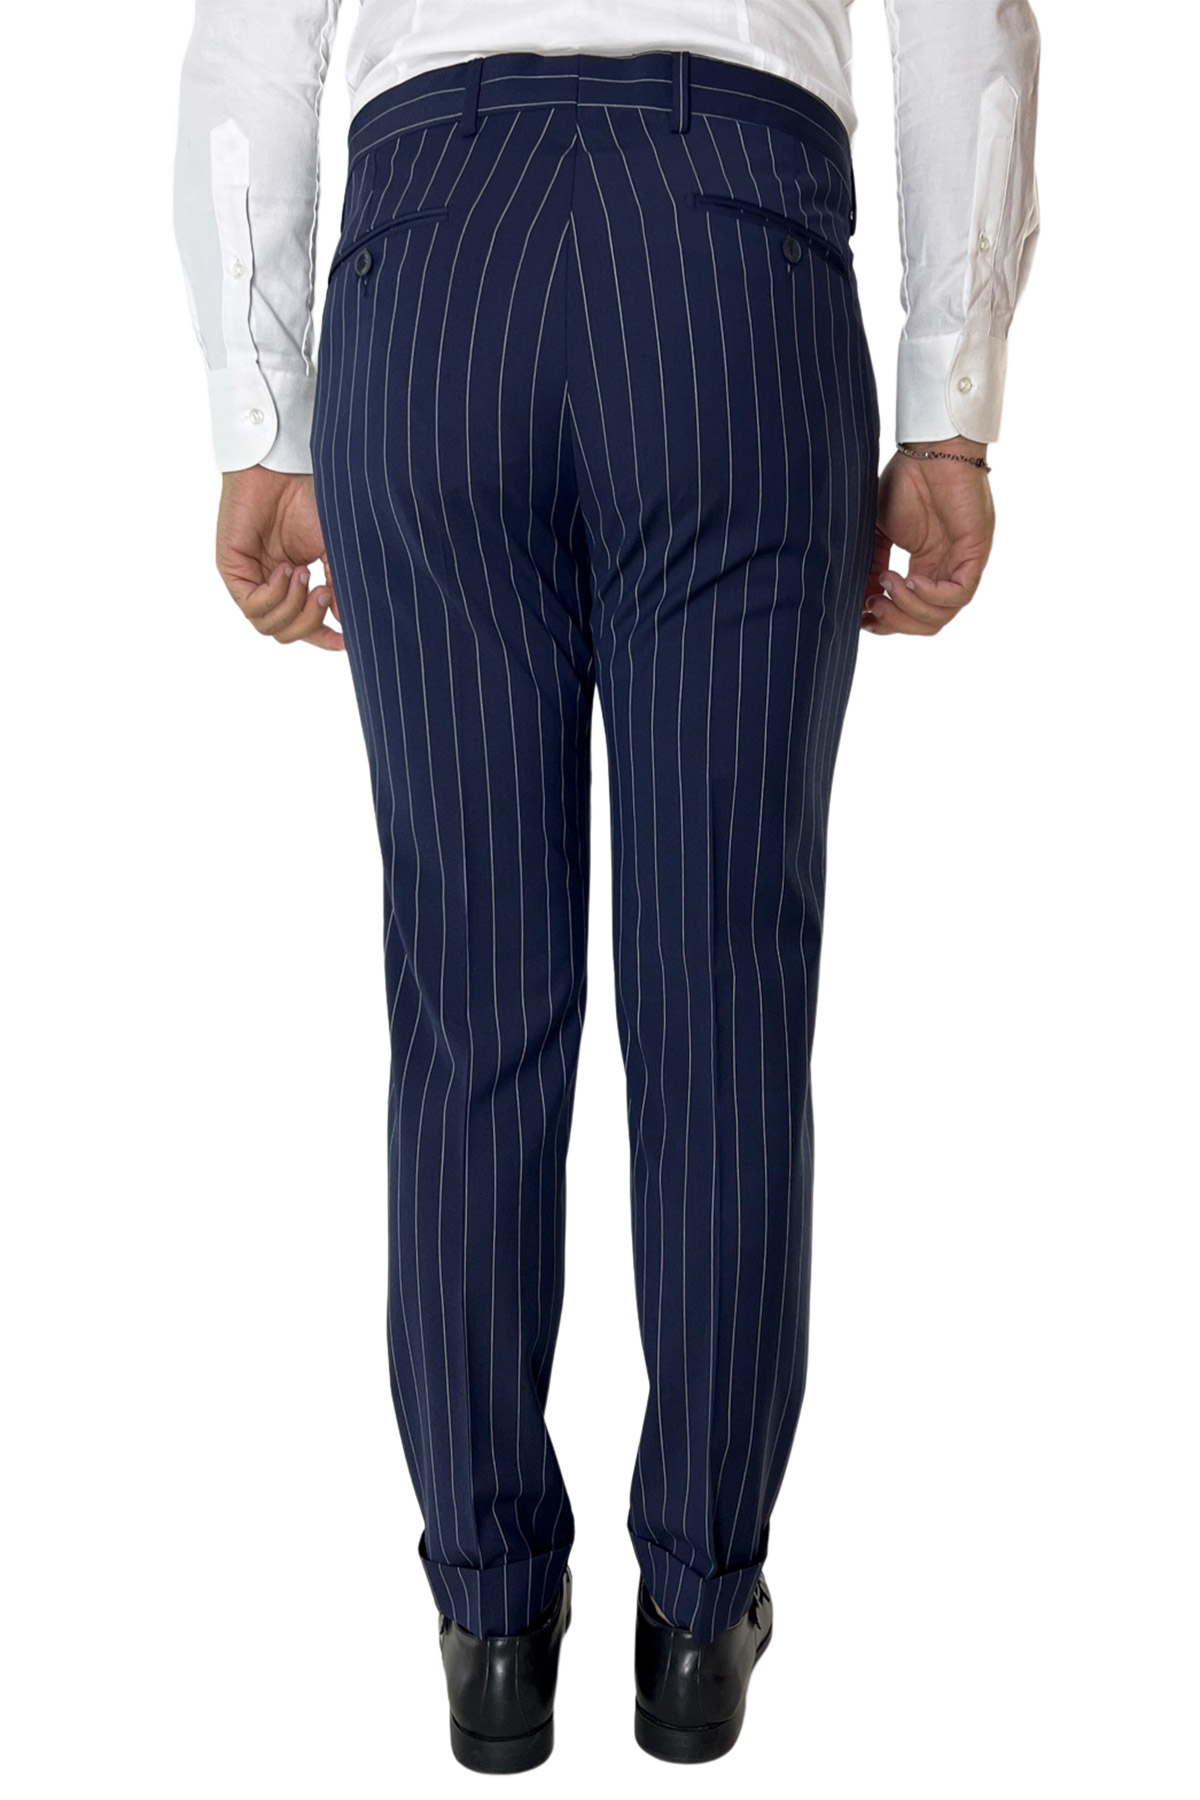 Pantalone uomo blu gessato fresco lana tasca america con una pinces e risvolto 4cm